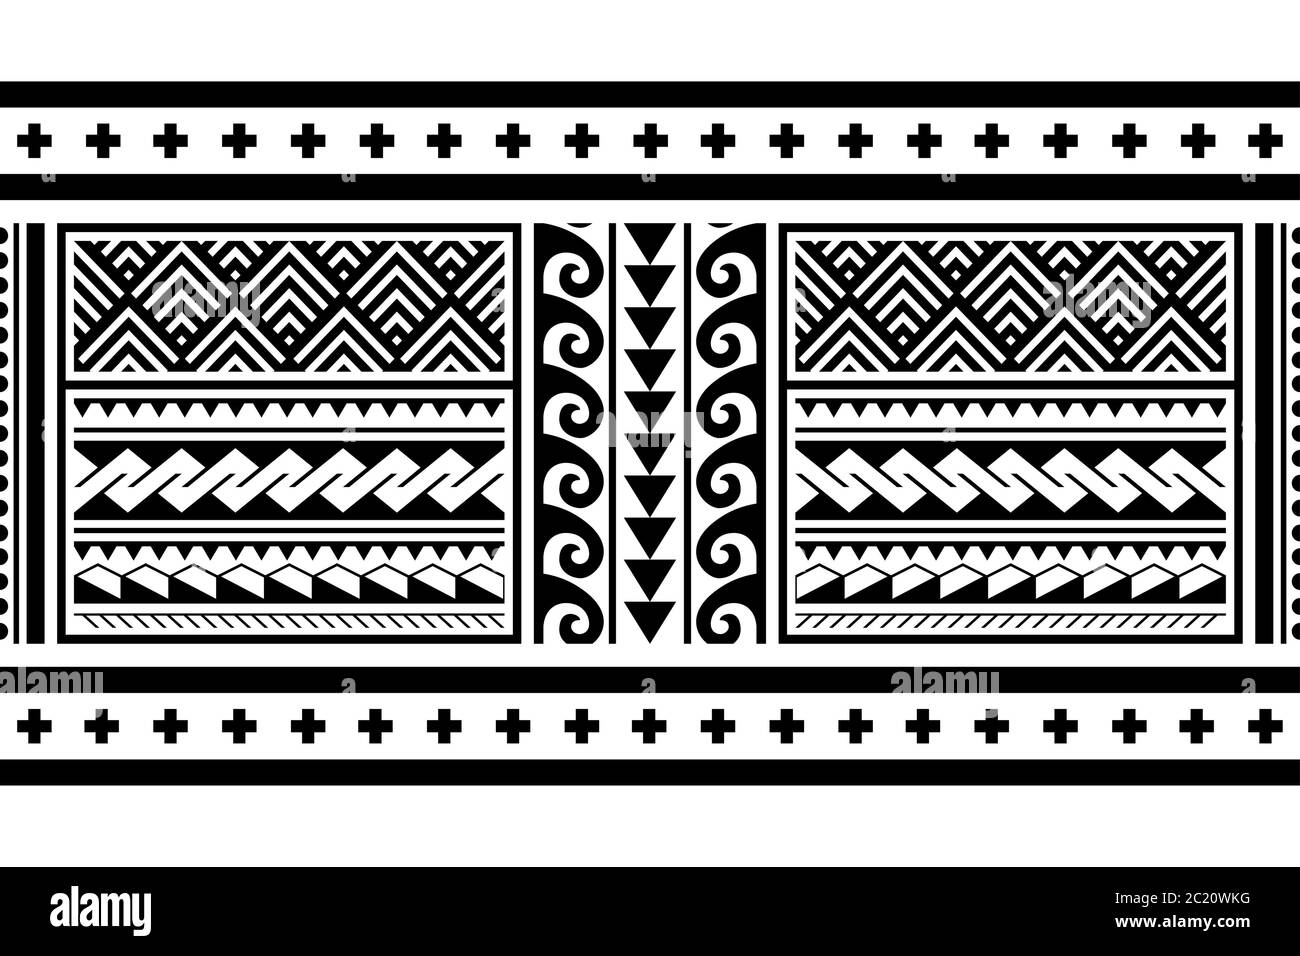 Ethnique tribale polynésienne géométrique sans couture vecteur long motif horizontal, hawaïen noir et blanc inspiré de l'art maori tatouage Illustration de Vecteur